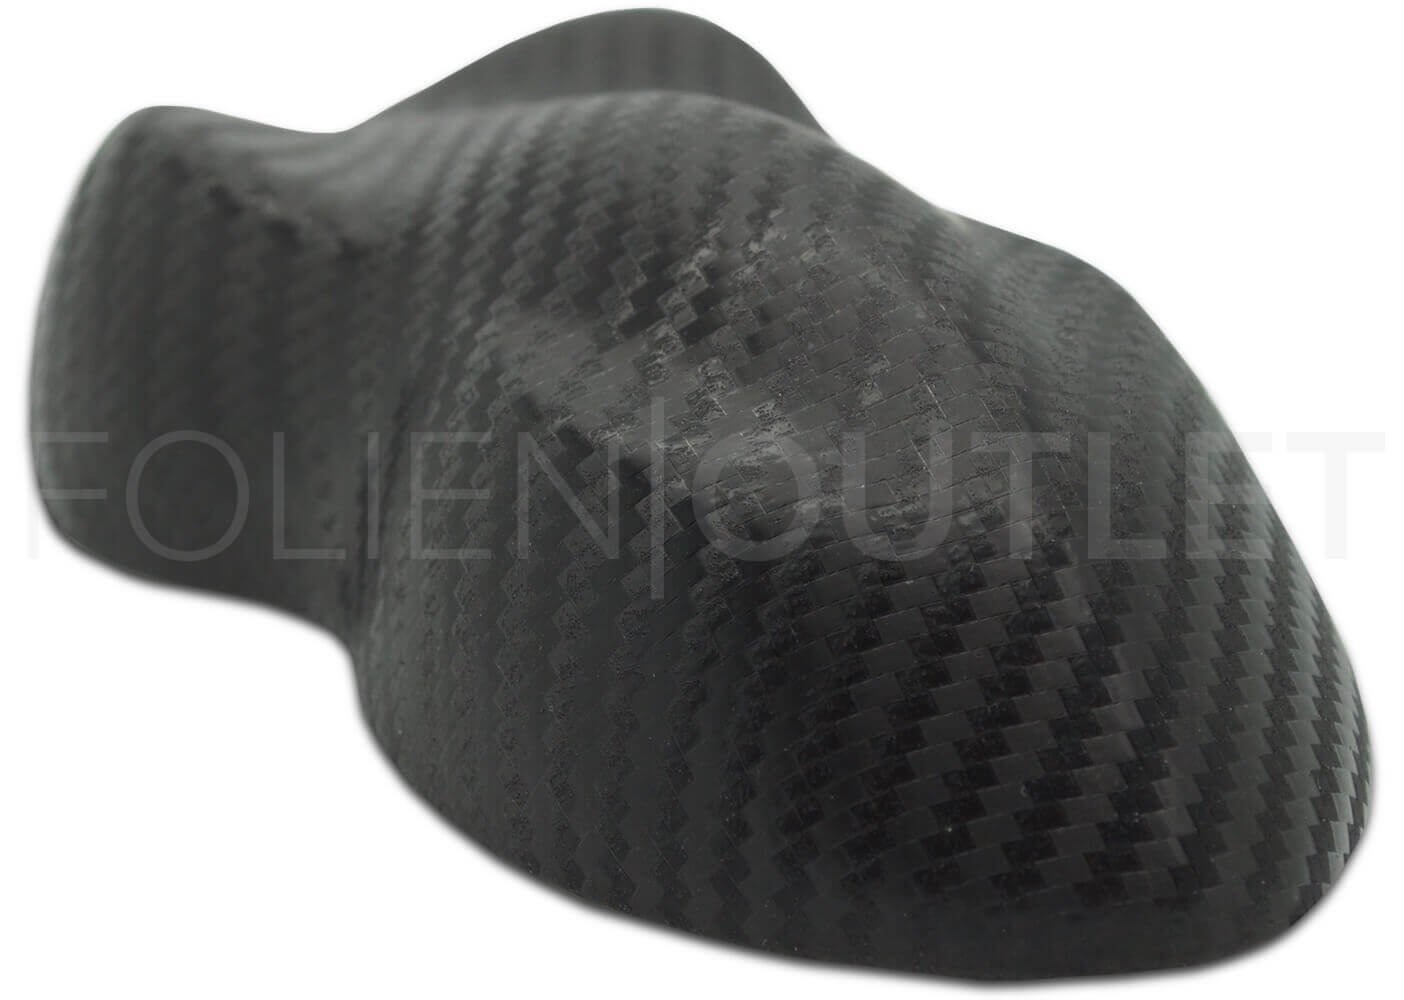 3M™ Wrap Film 2080 Autofolie Muster CFS12 Carbon Black